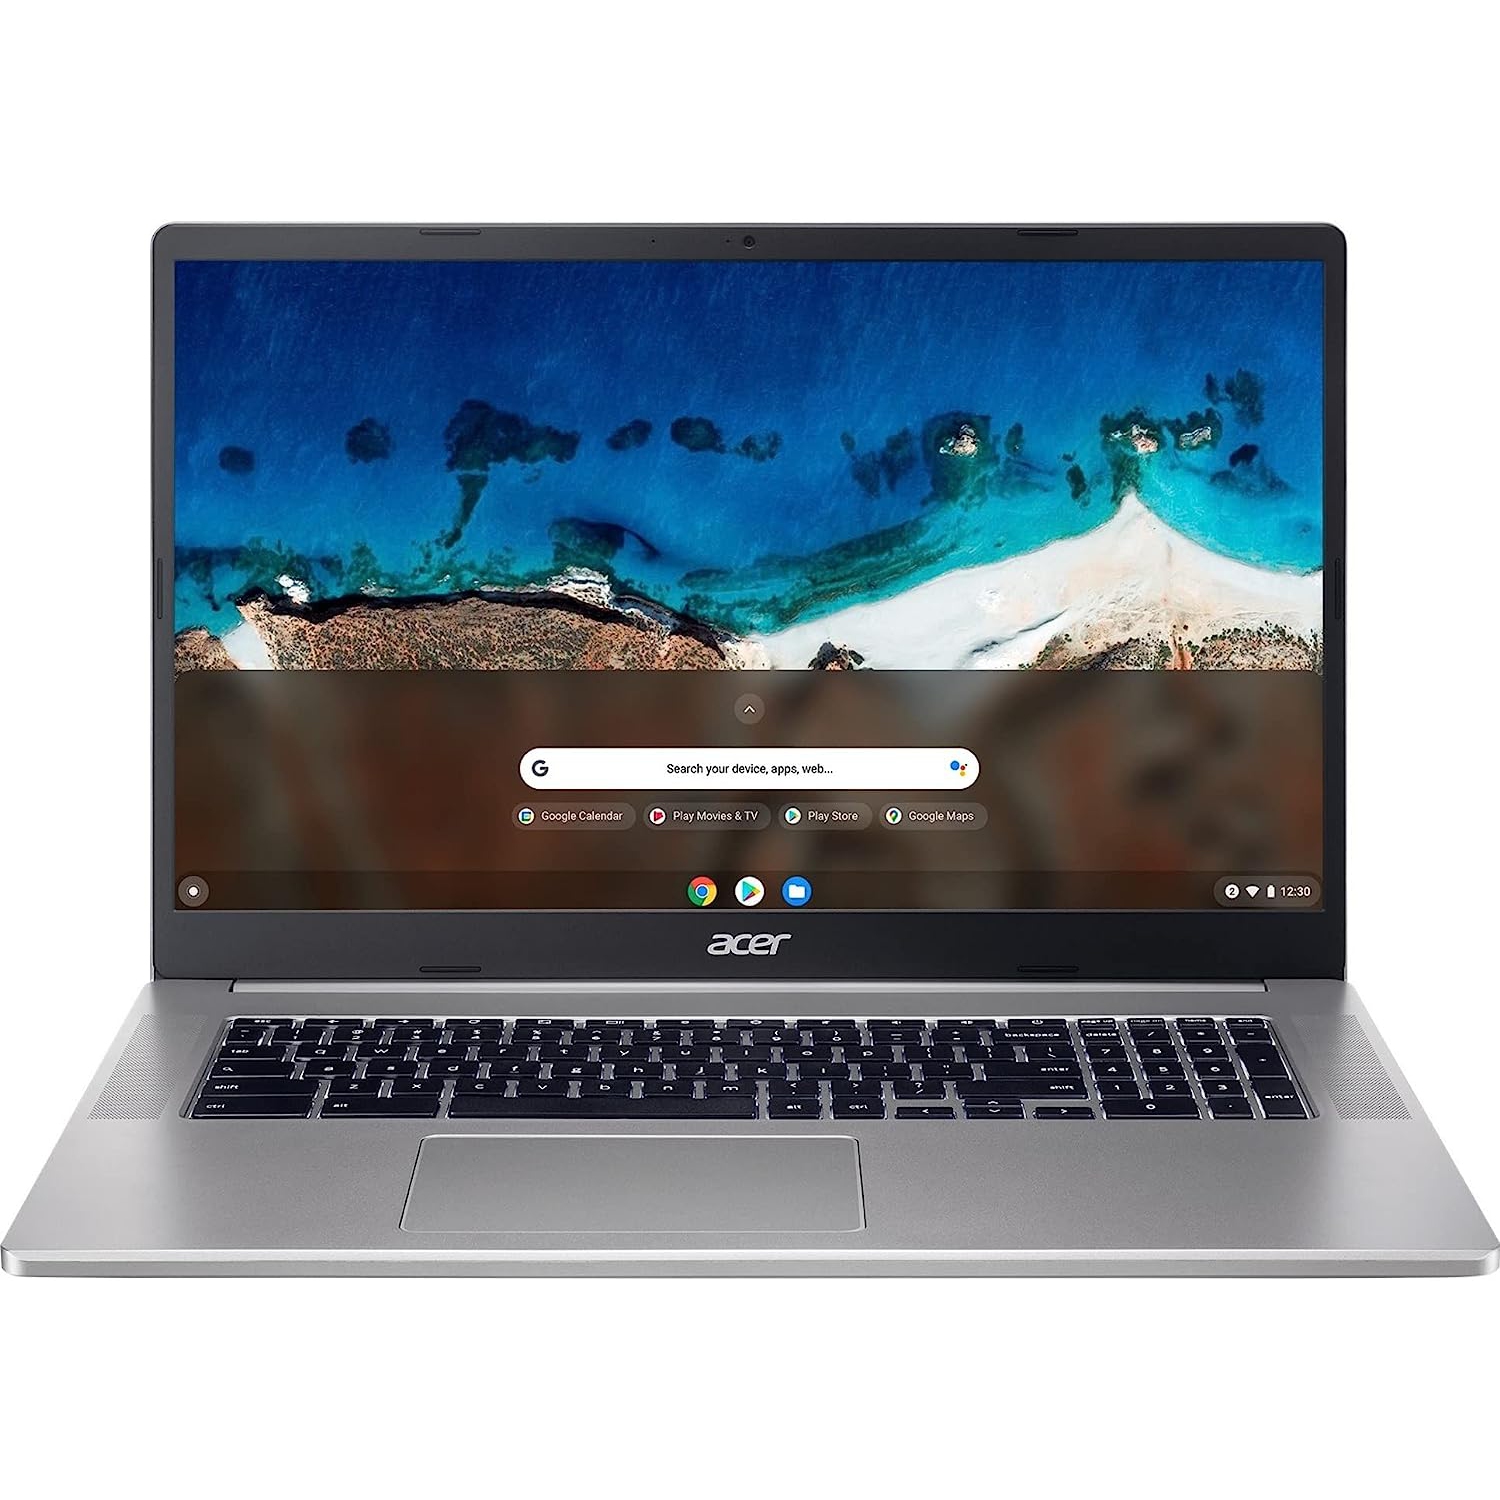 Acer 17.3" Chromebook (Intel N4500/8Gb RAM/128Gb eMMC/Google Chrome) - Refurbished (Excellent) w/ 1 Year Warranty